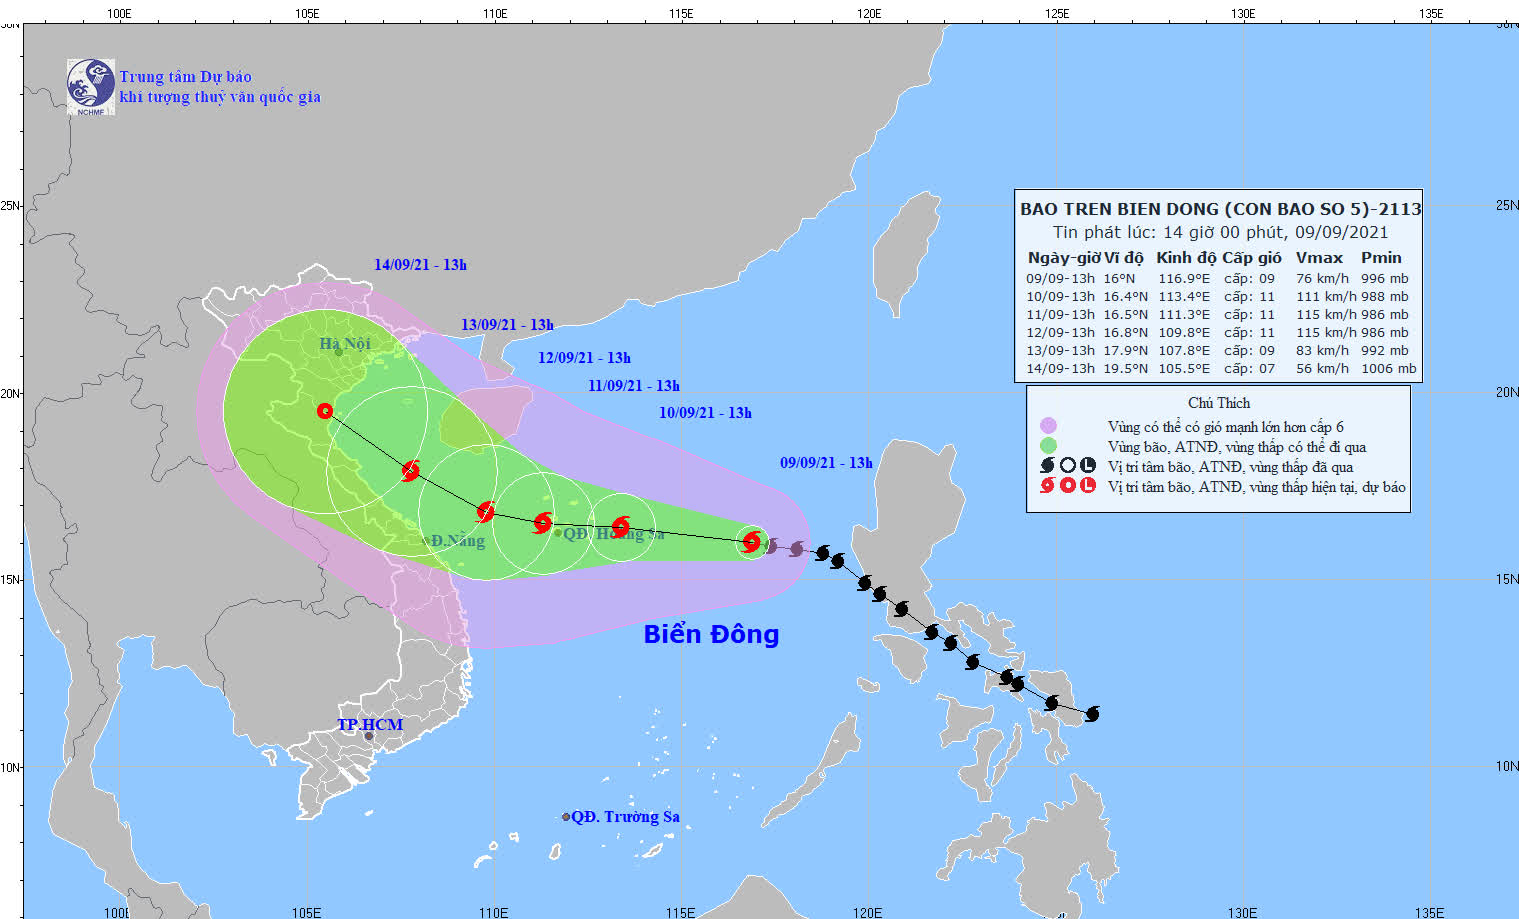 Mỹ, Trung Quốc, Nhật Bản cũng khó dự báo về đường đi của bão Conson - Ảnh 2.